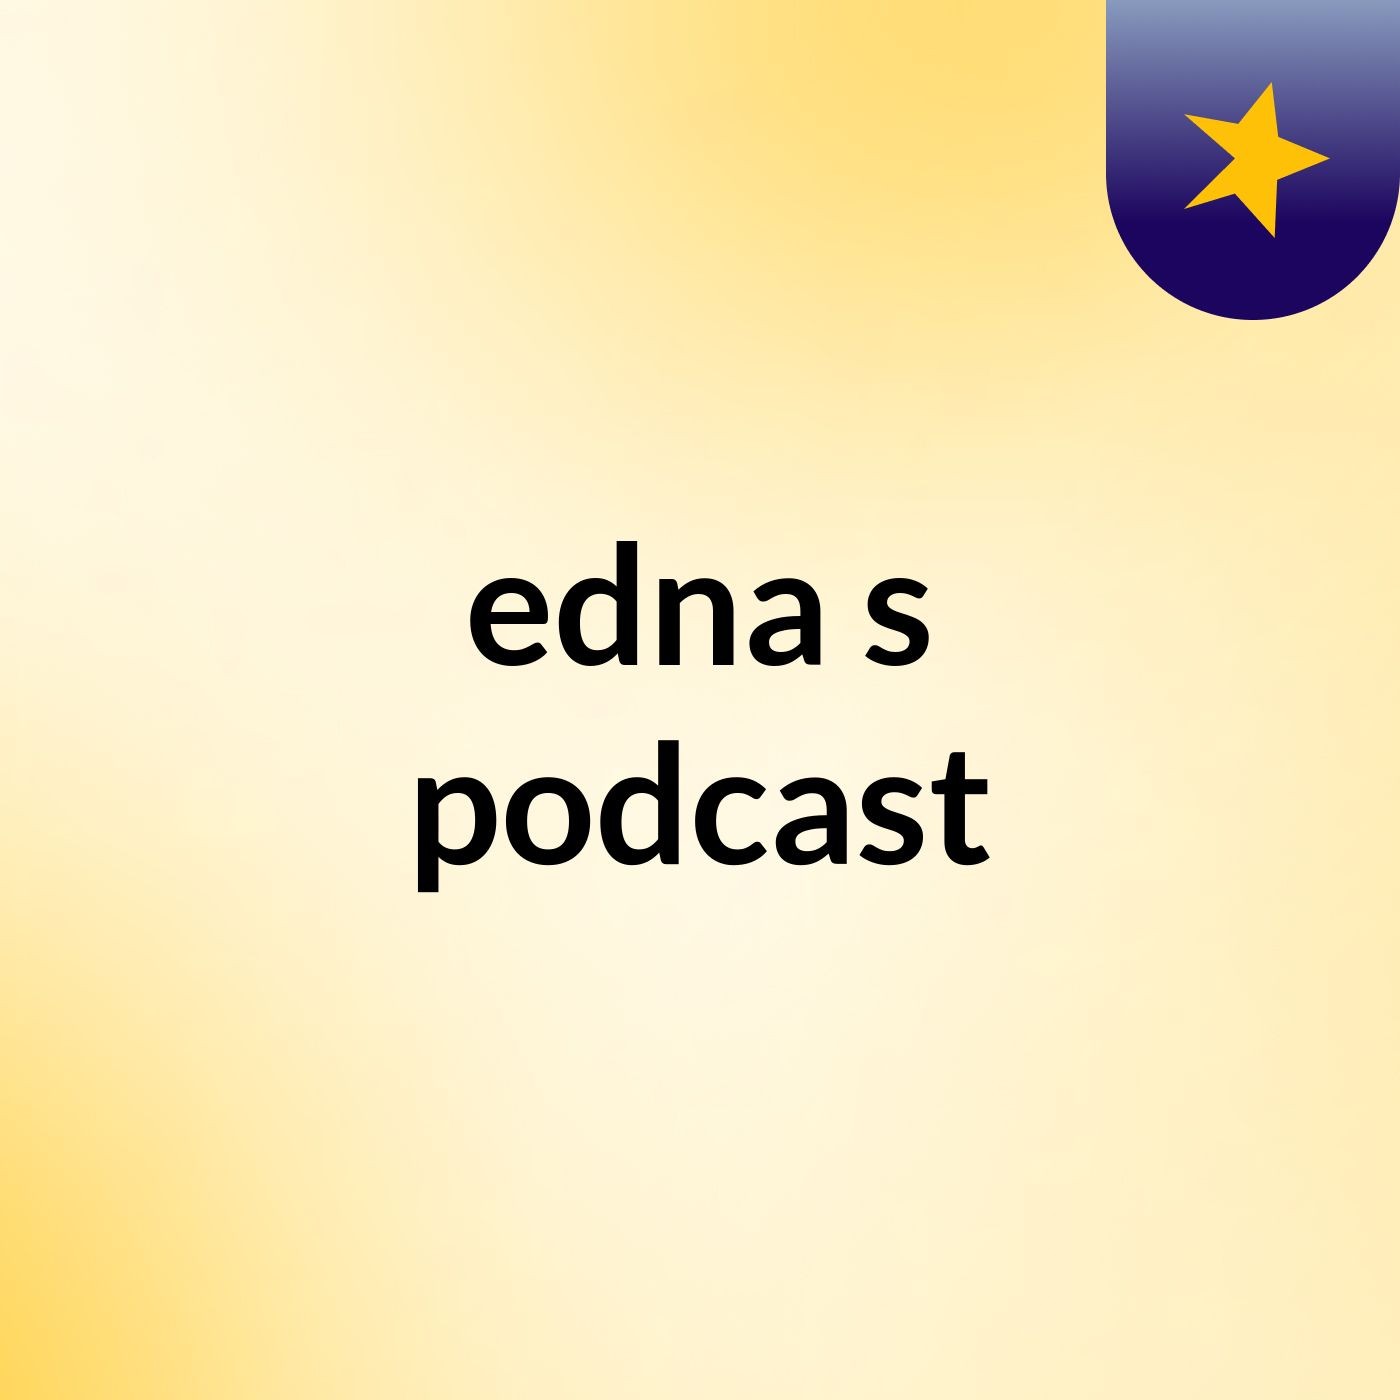 edna's podcast